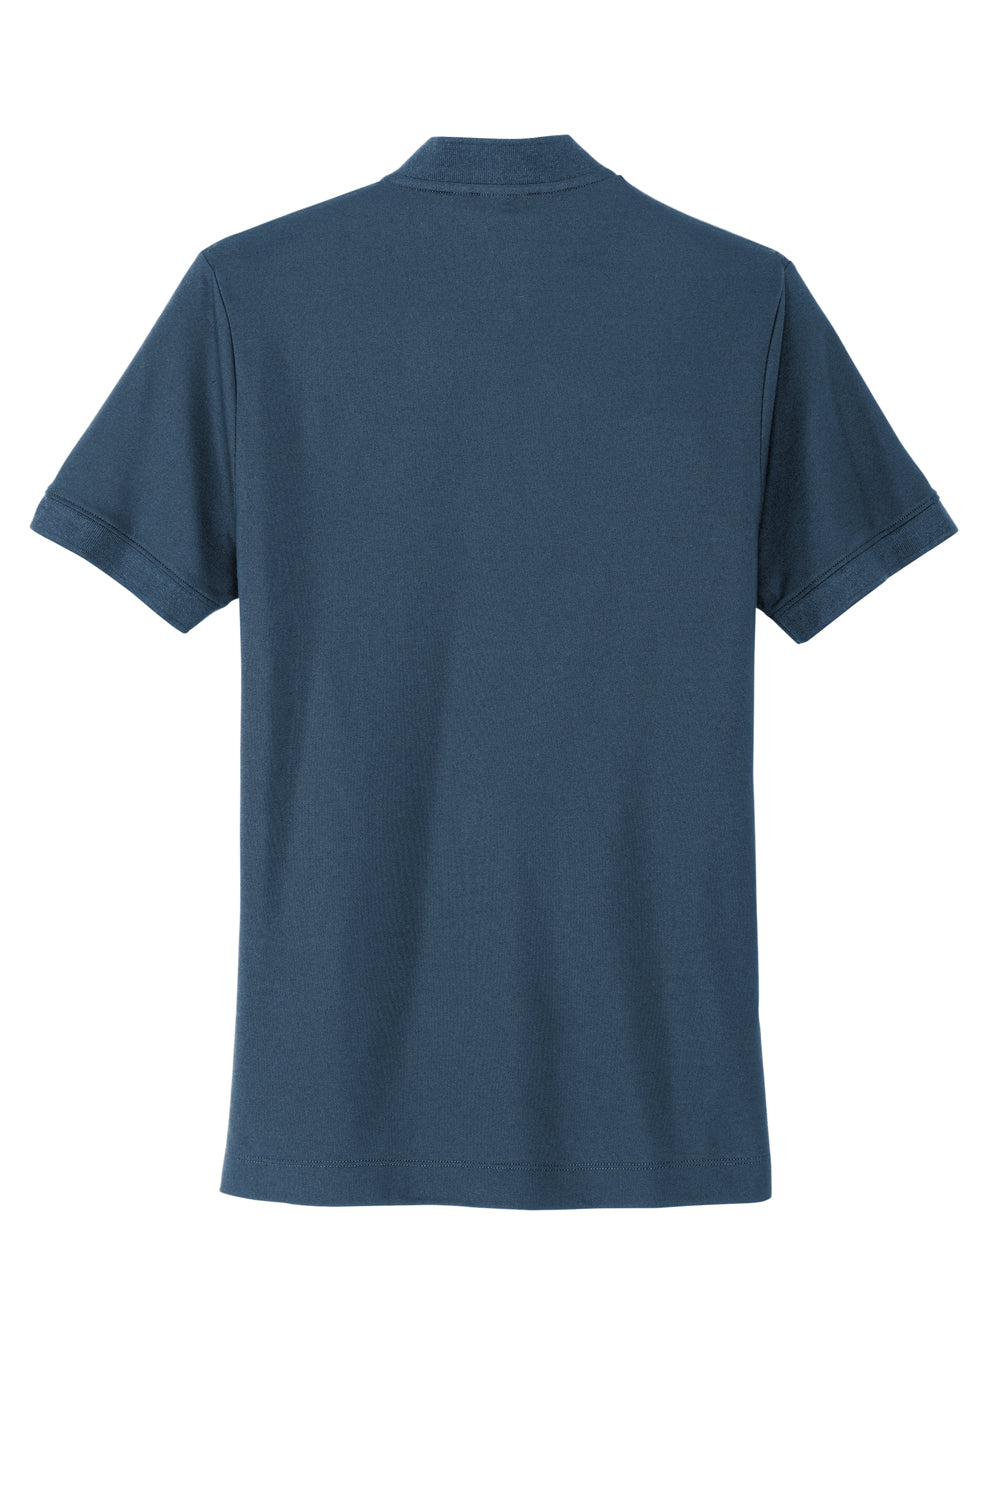 Mercer+Mettle MM1008 Stretch Pique Short Sleeve Henley T-Shirt Insignia Blue Flat Back